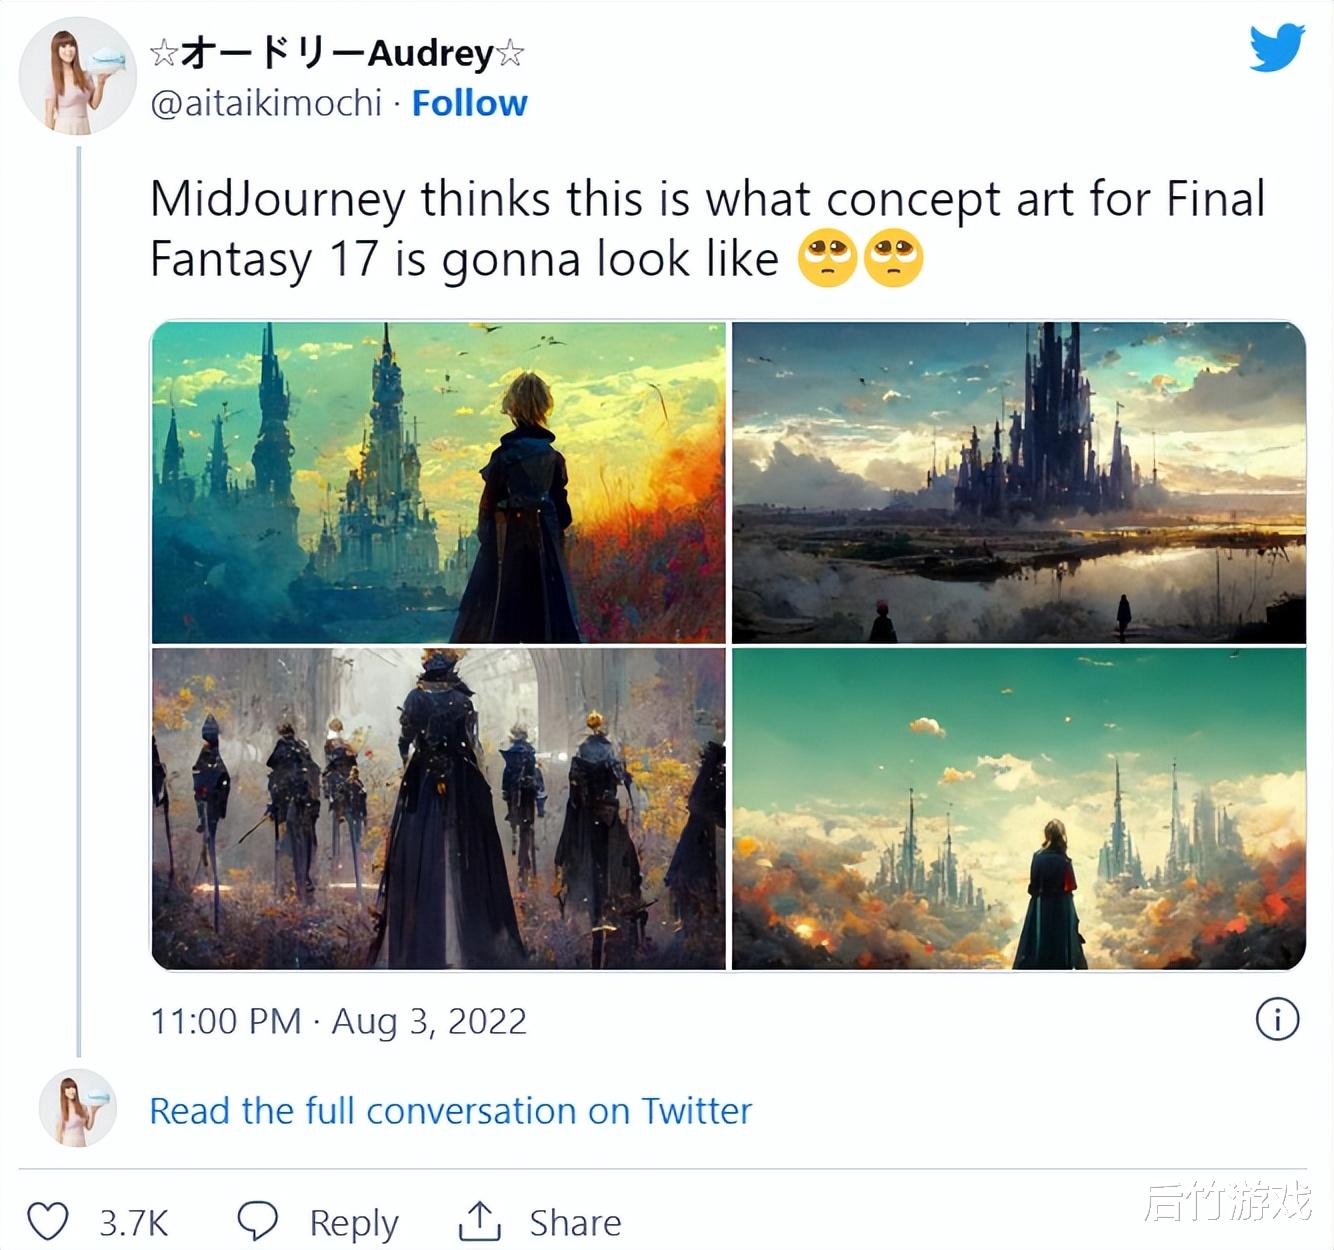 美轮美奂! 玩家用AI画图软件生成了《最终幻想17》四张原画